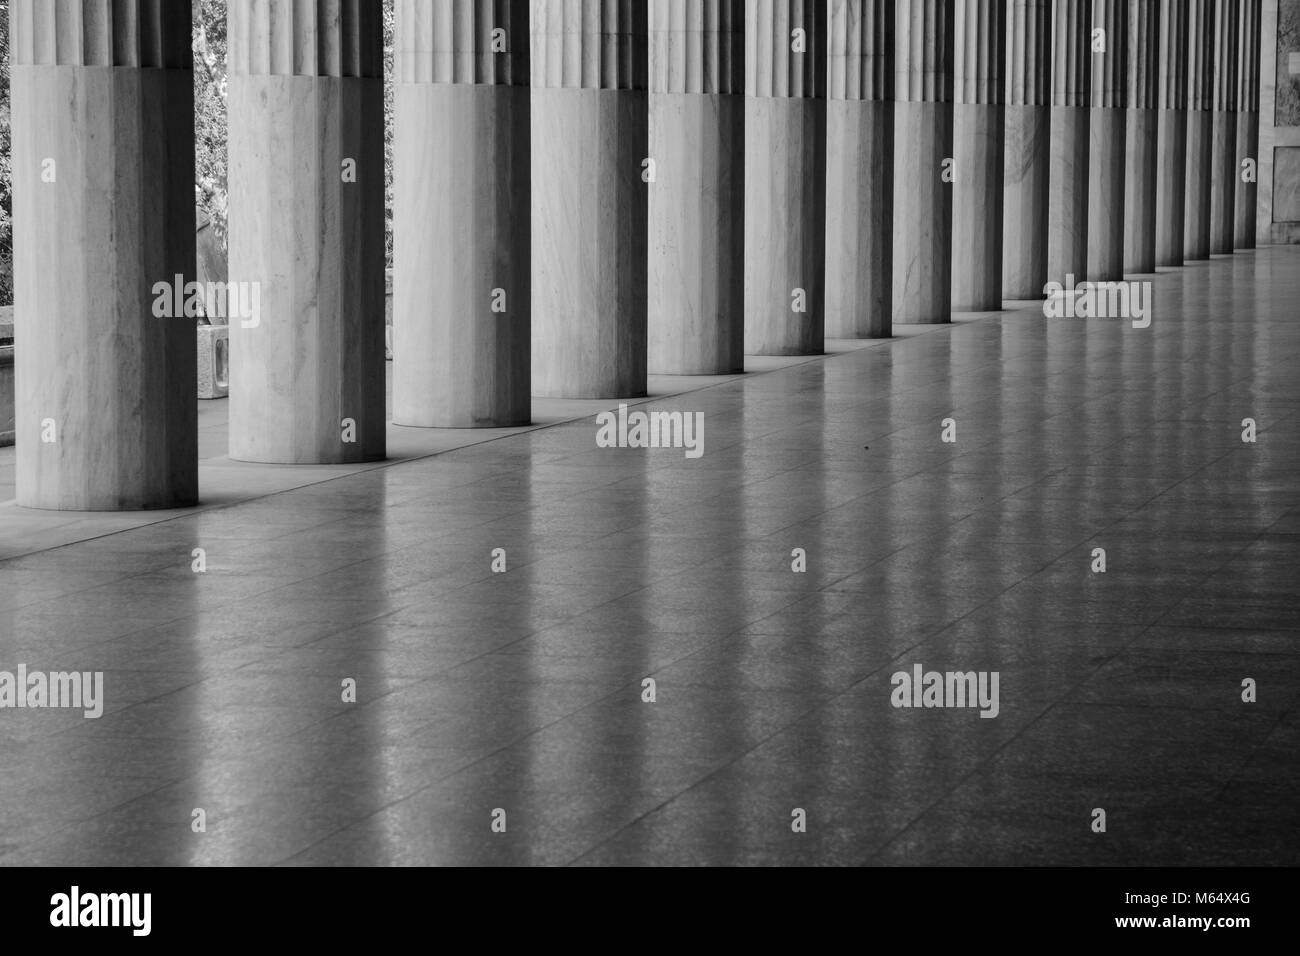 Ligne de colonnes grecques avec des réflexions sur un marbre brillant super et pas de gens en monochrome Banque D'Images